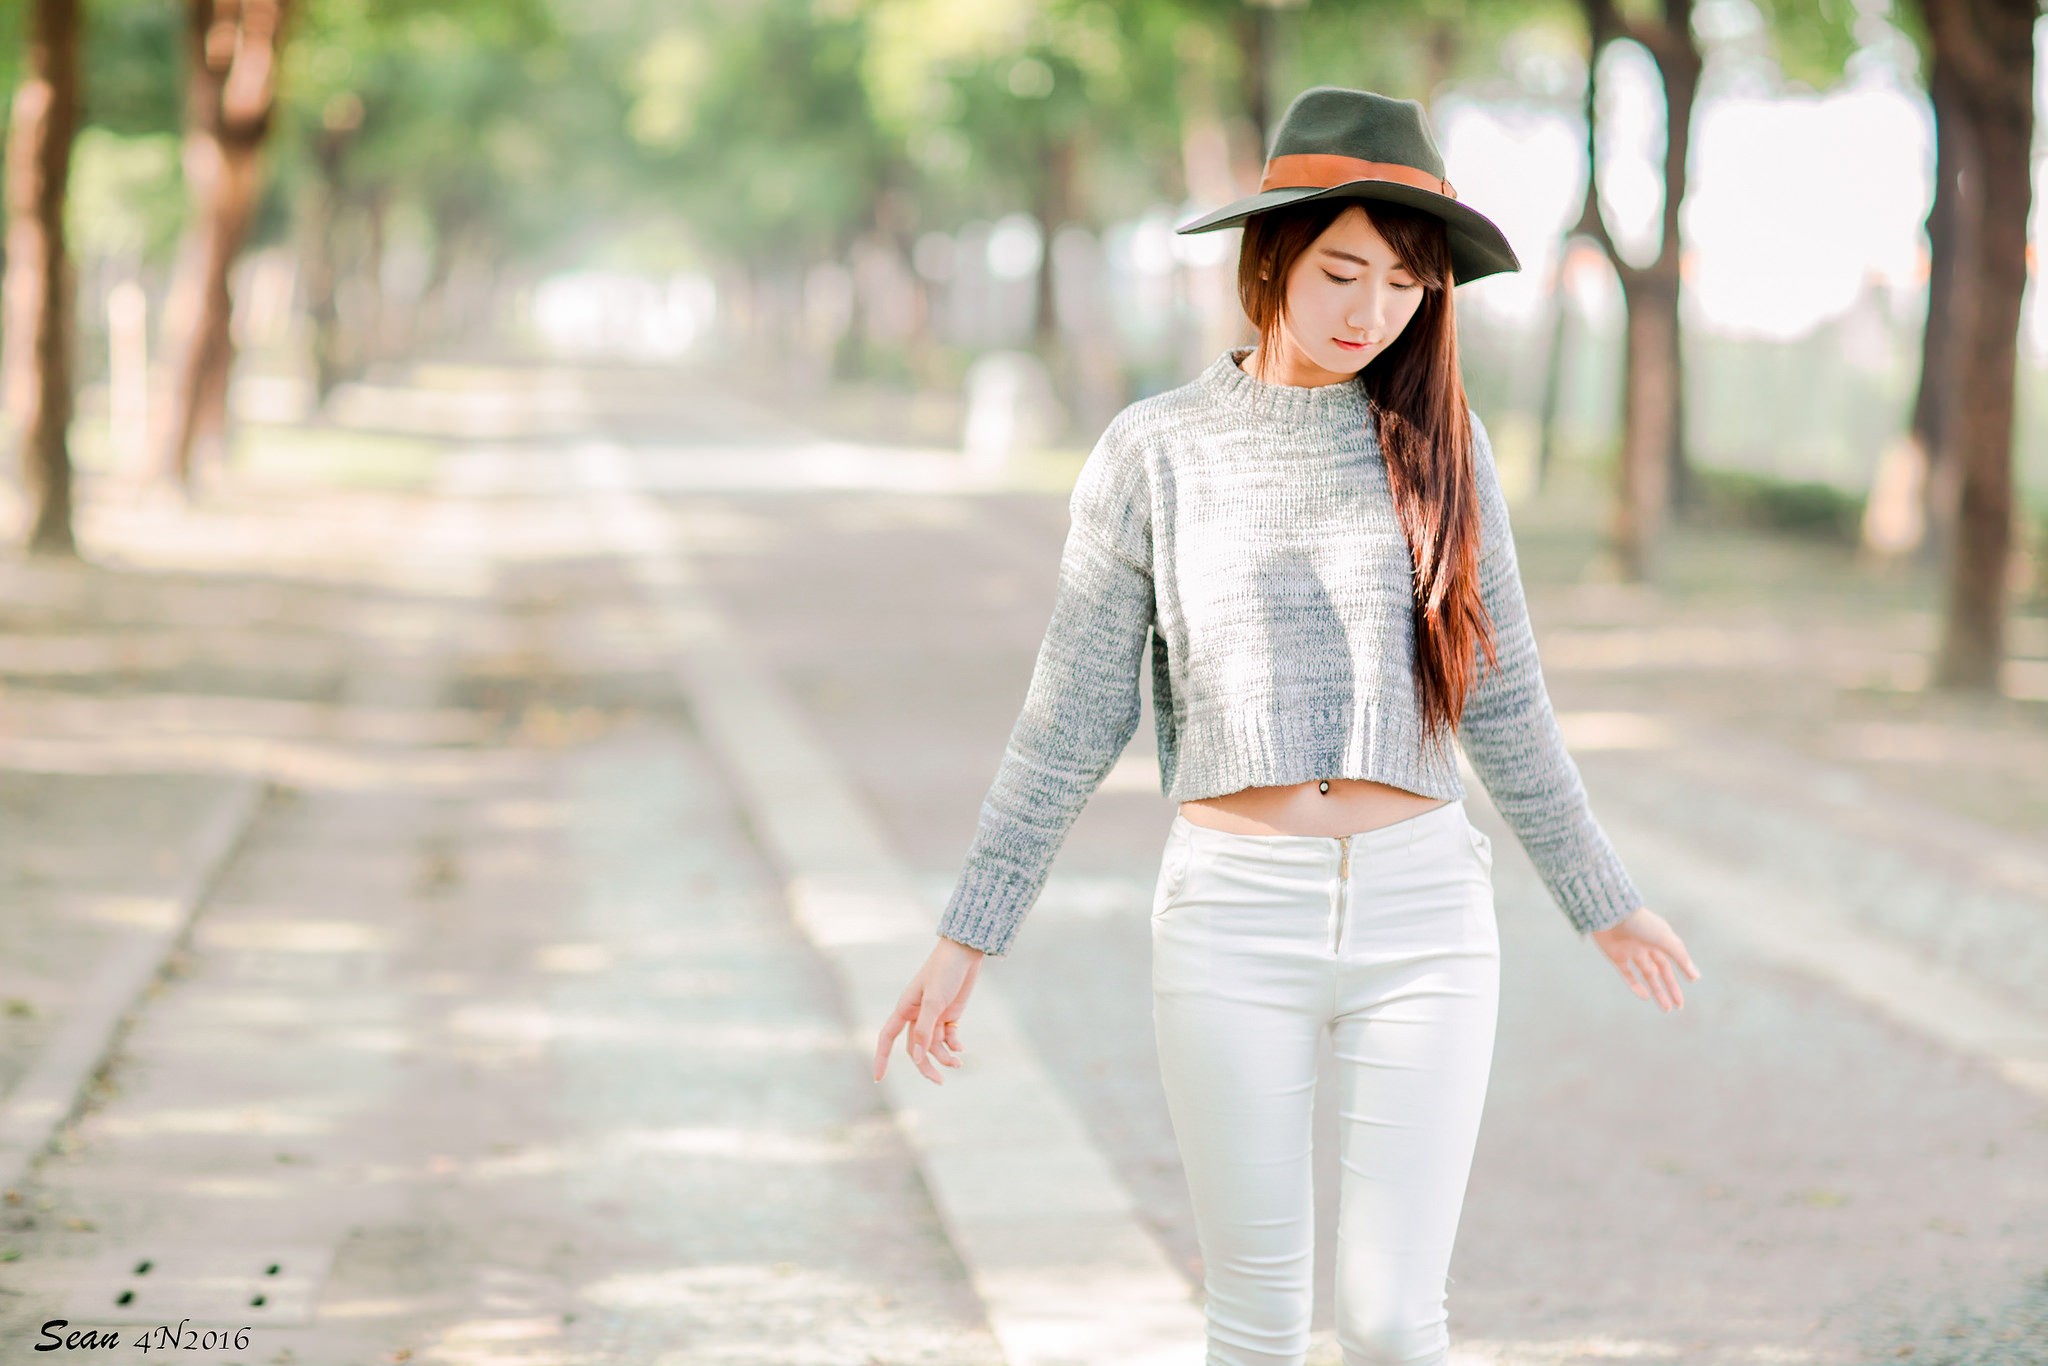 People 2048x1366 hat millinery skinny sweater Asian women